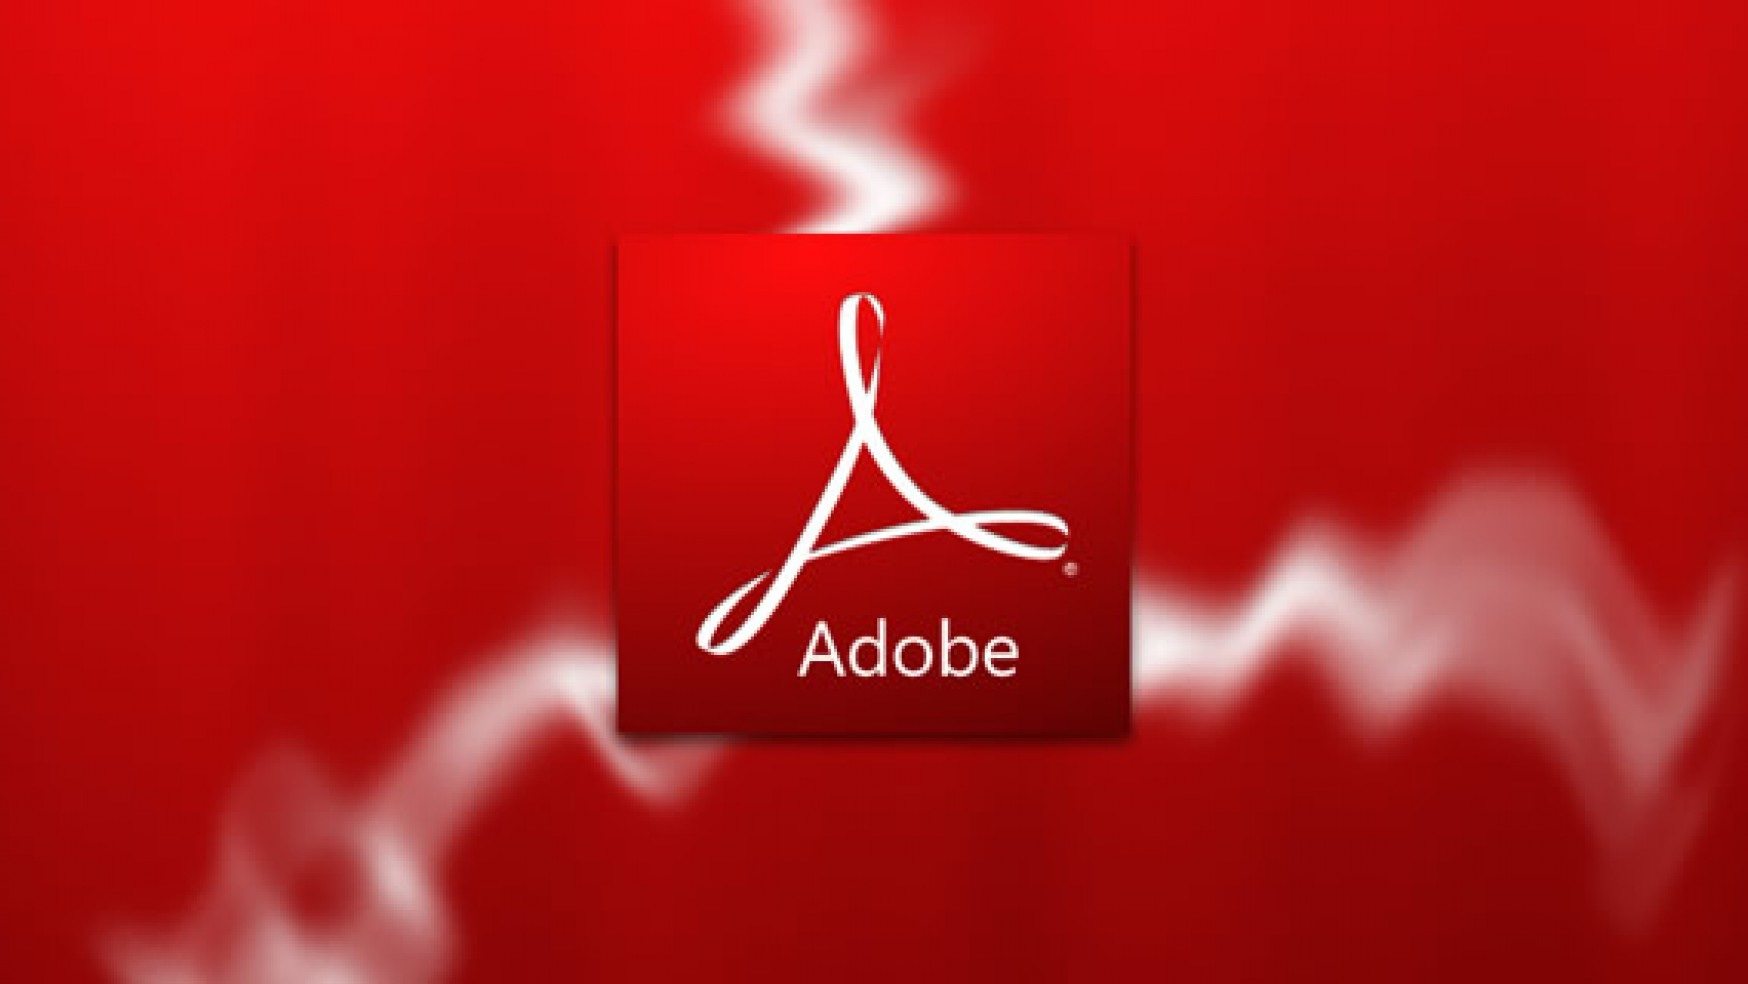 Flash adobe download free mac os